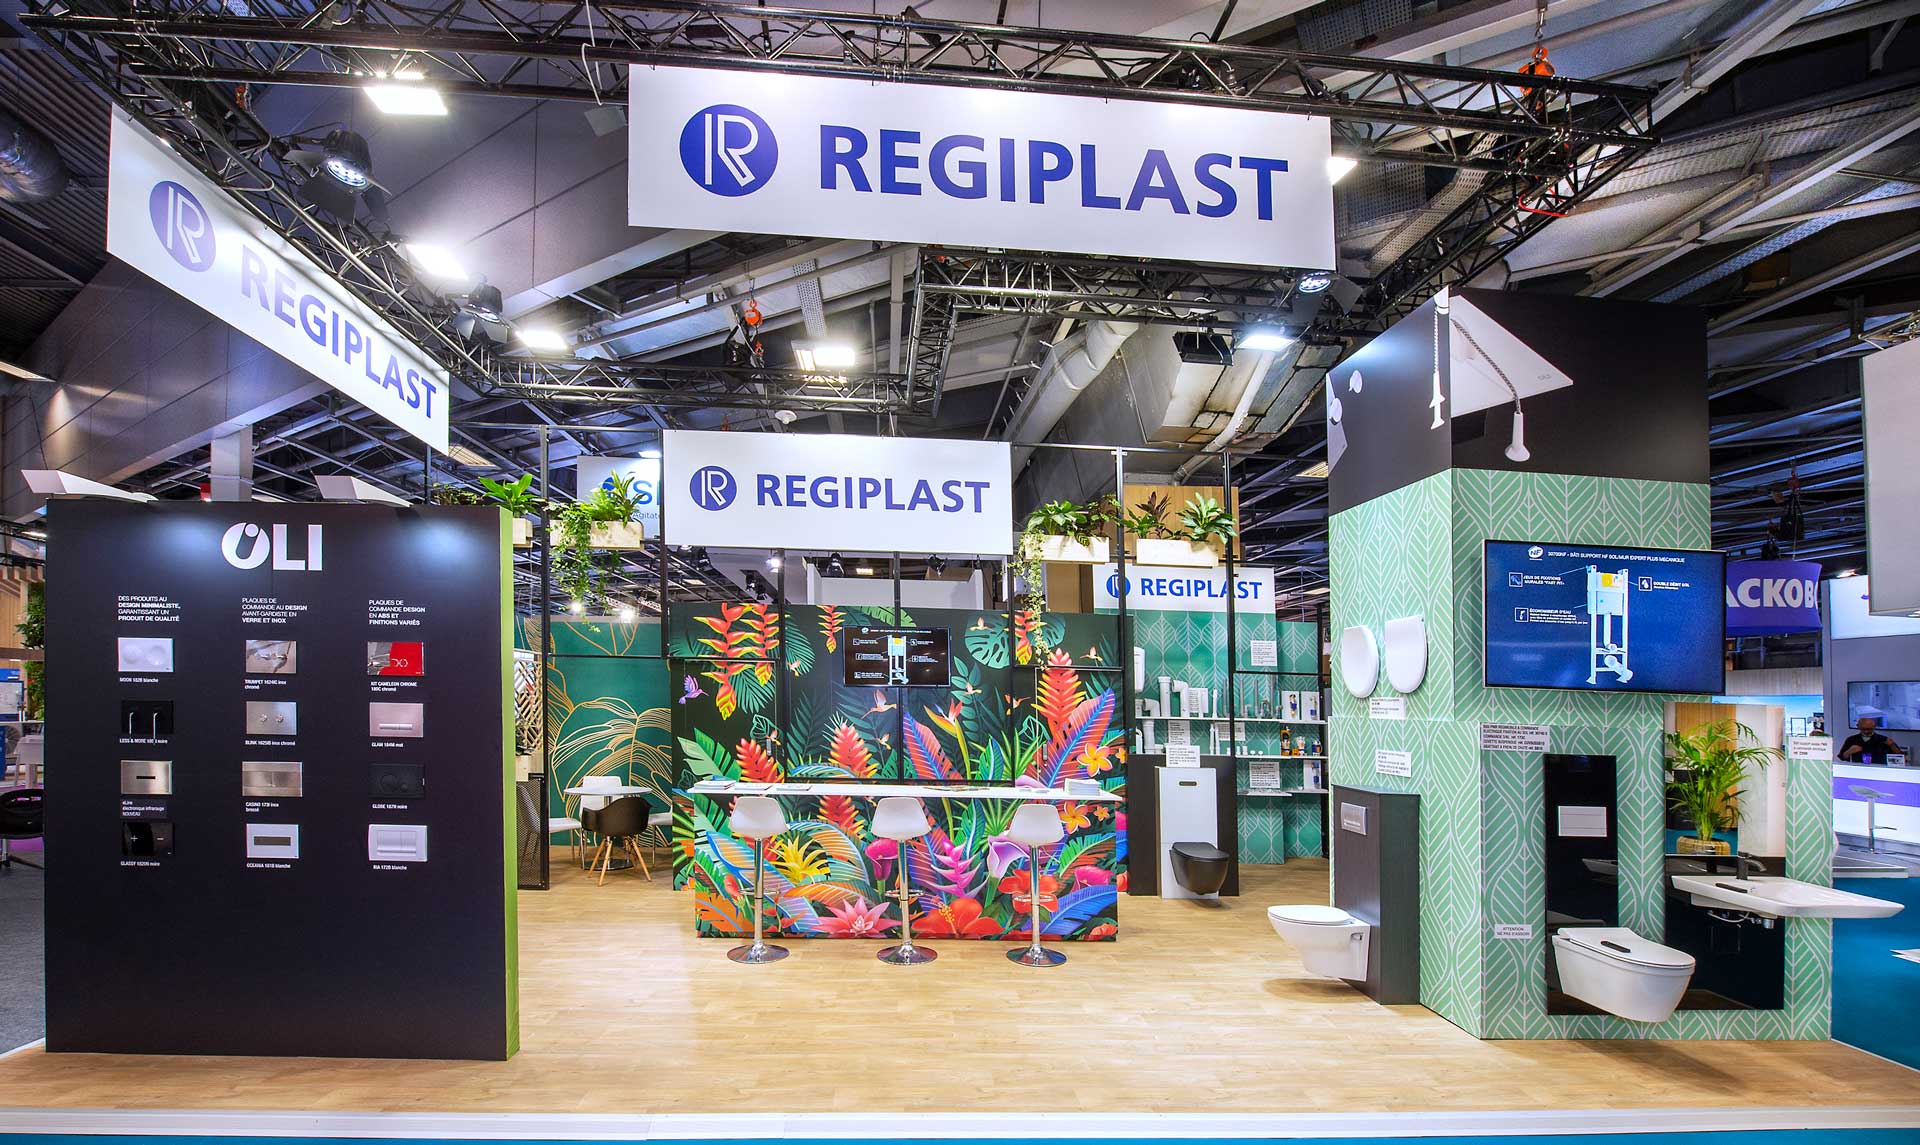 conception du stand Regiplast de 54m2 au Salon Ideobain 2022 à Paris